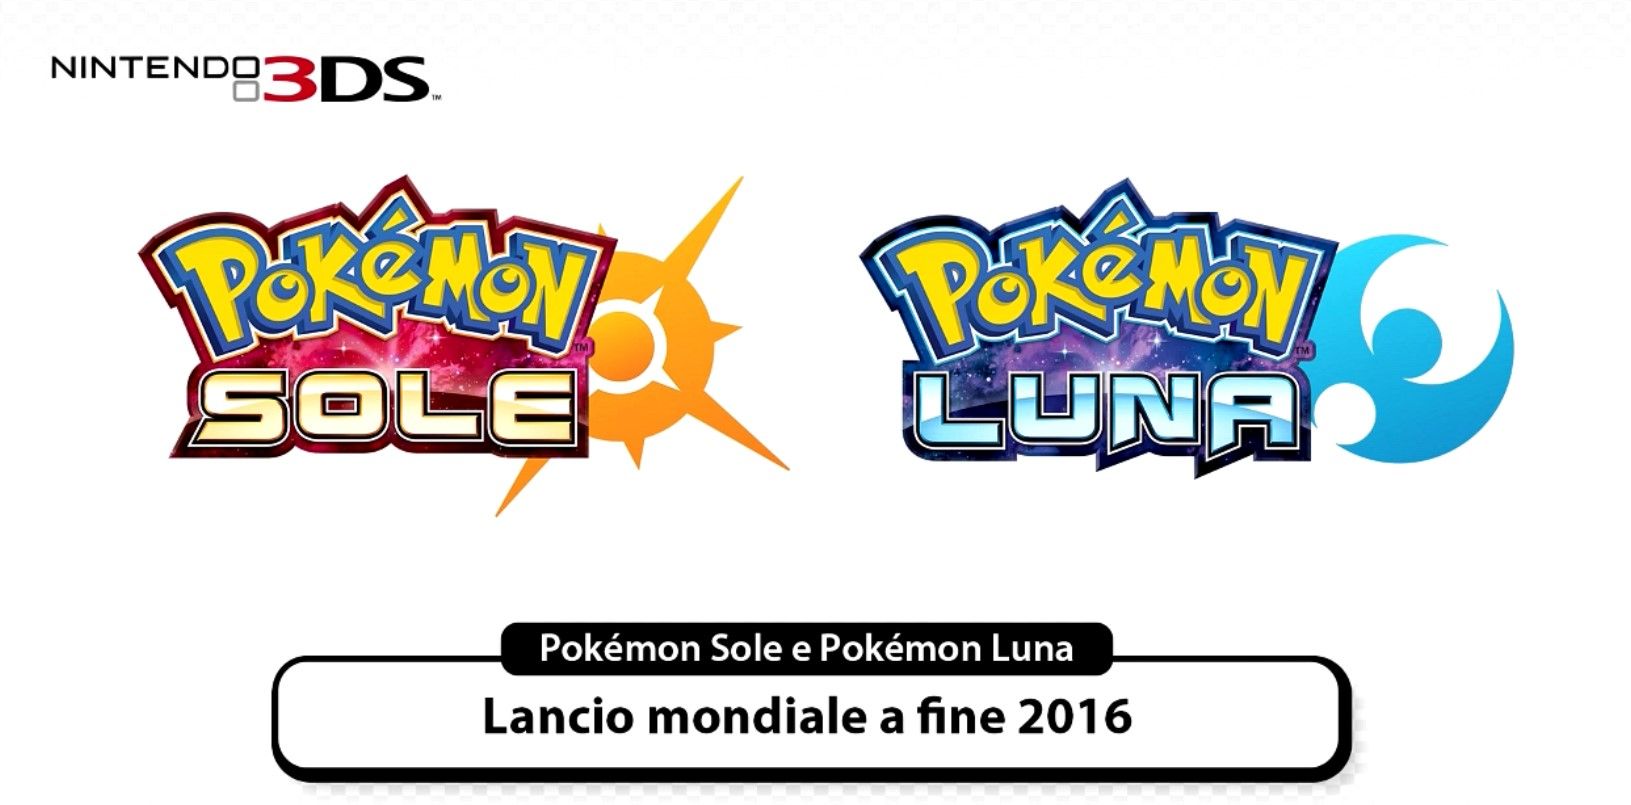 Confermati Pokémon Sole e Pokémon Luna